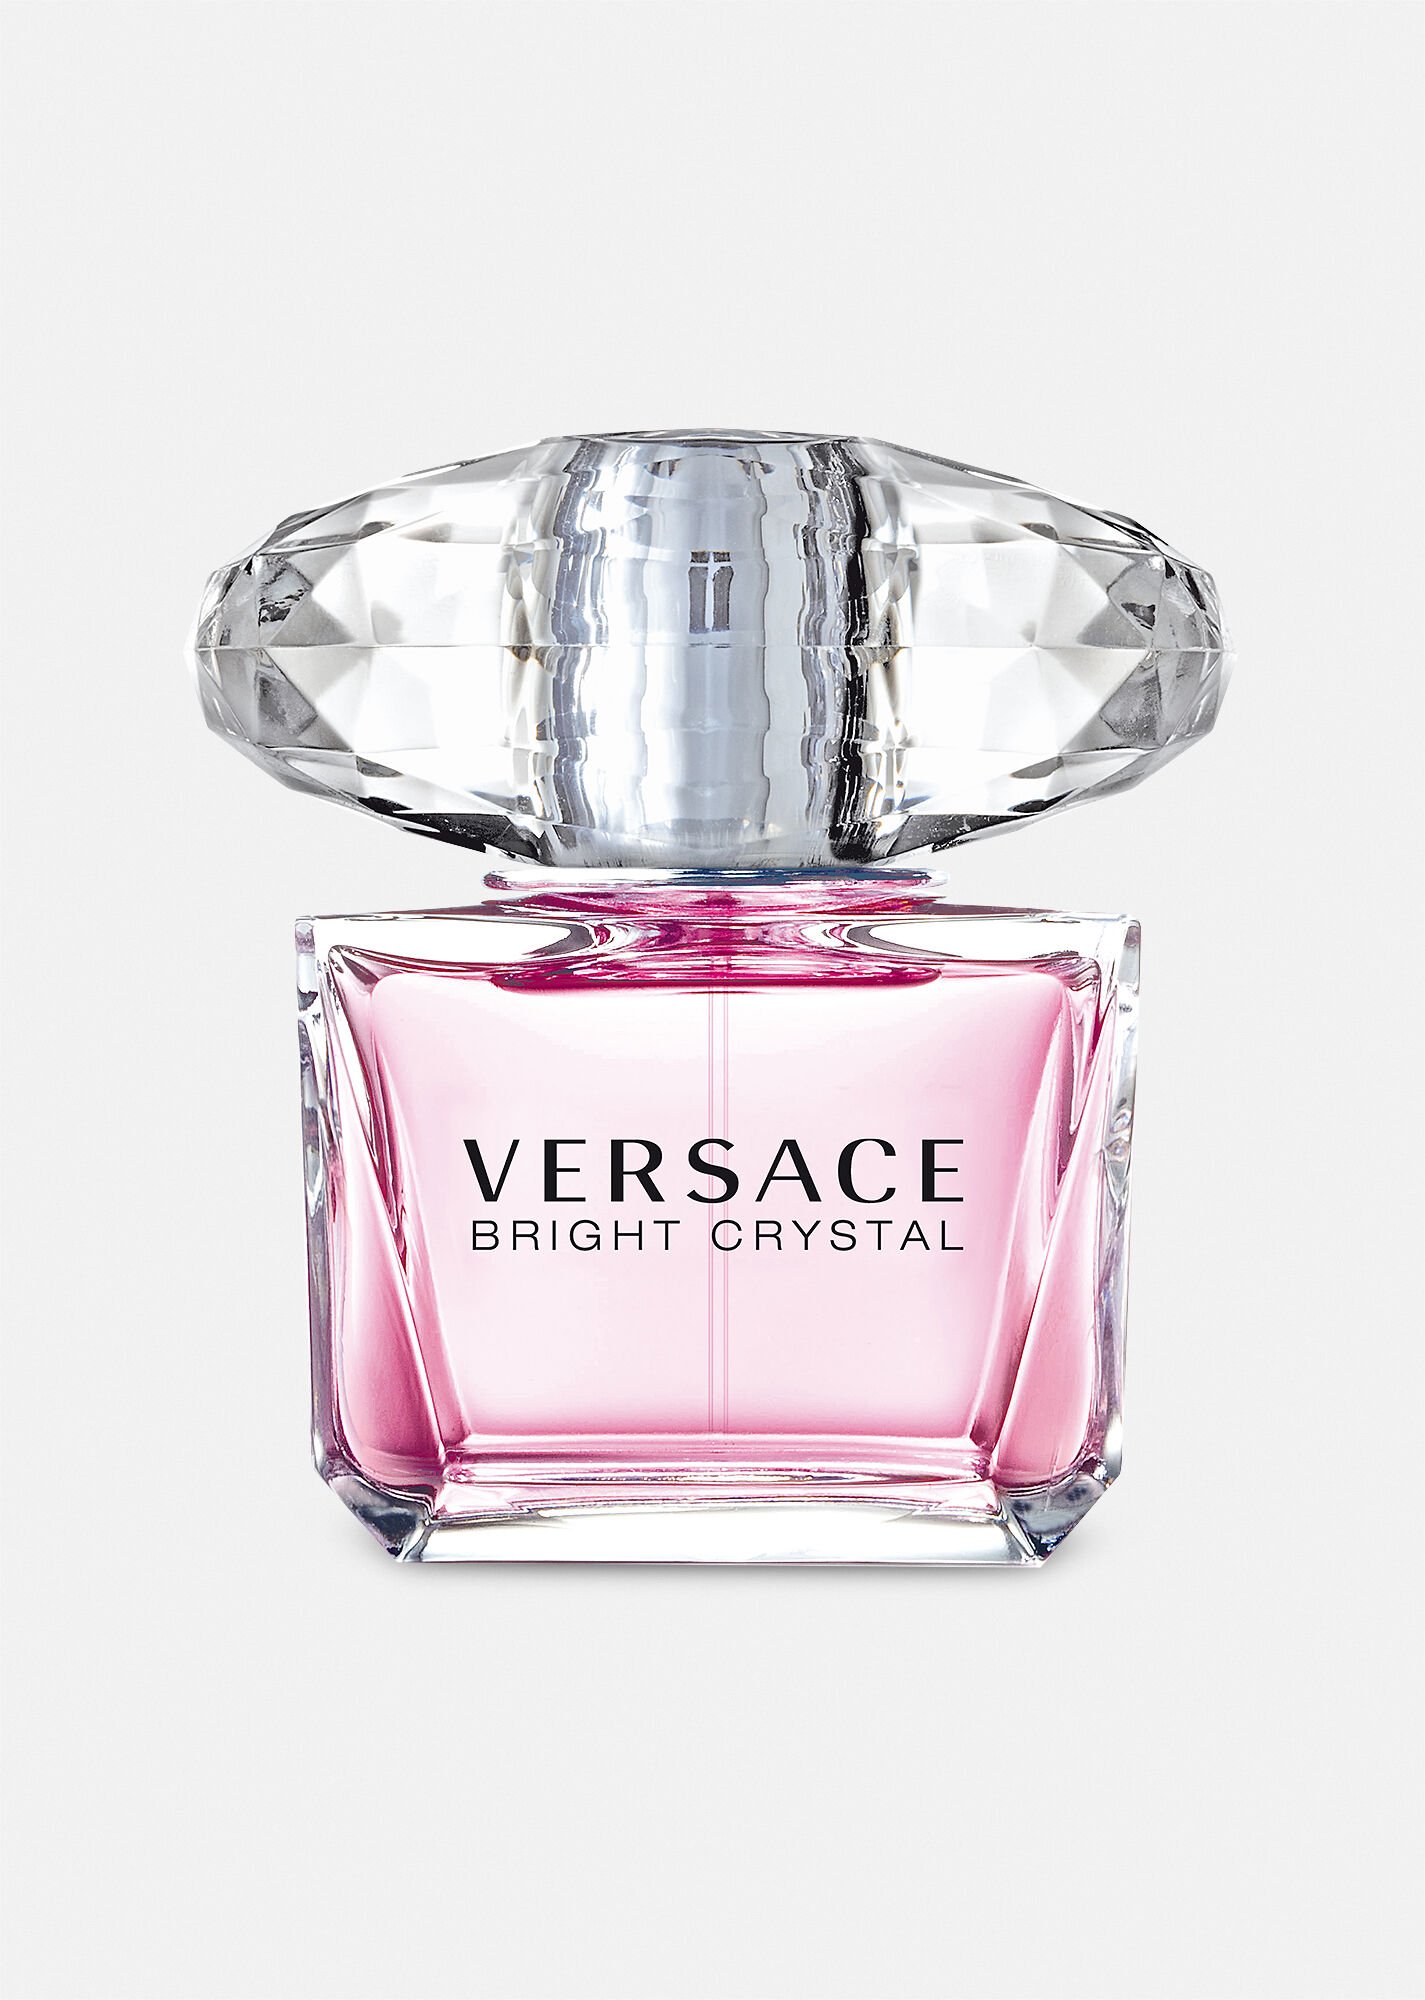 Bright Crystal Perfume Precio Versace